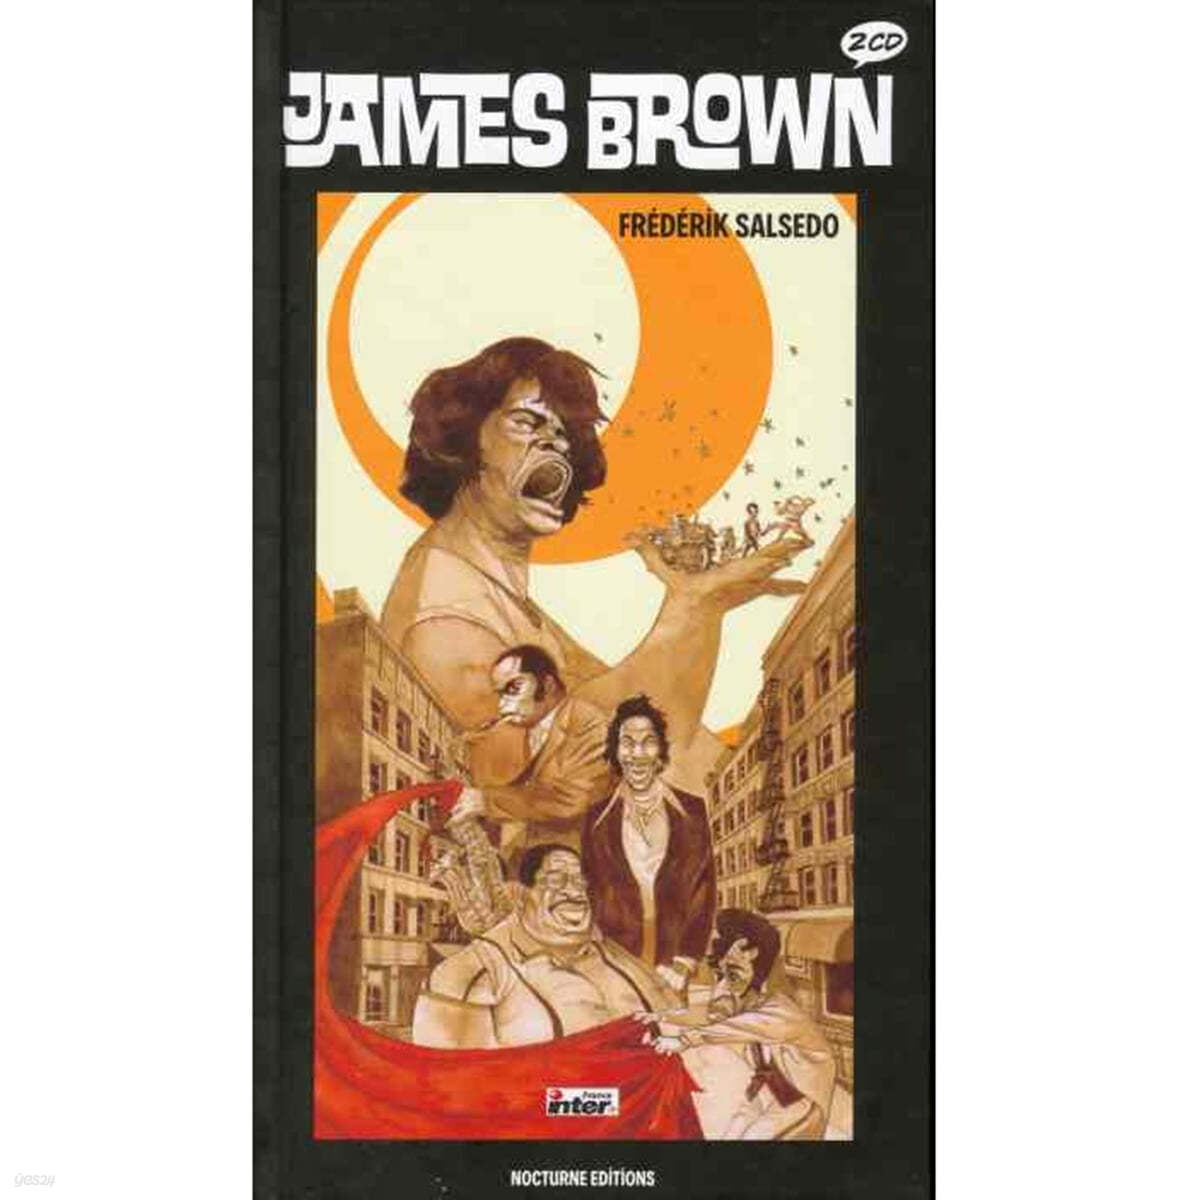 일러스트로 만나는 제임스 브라운 (James Brown Illustrated by Frederik Salsedo)